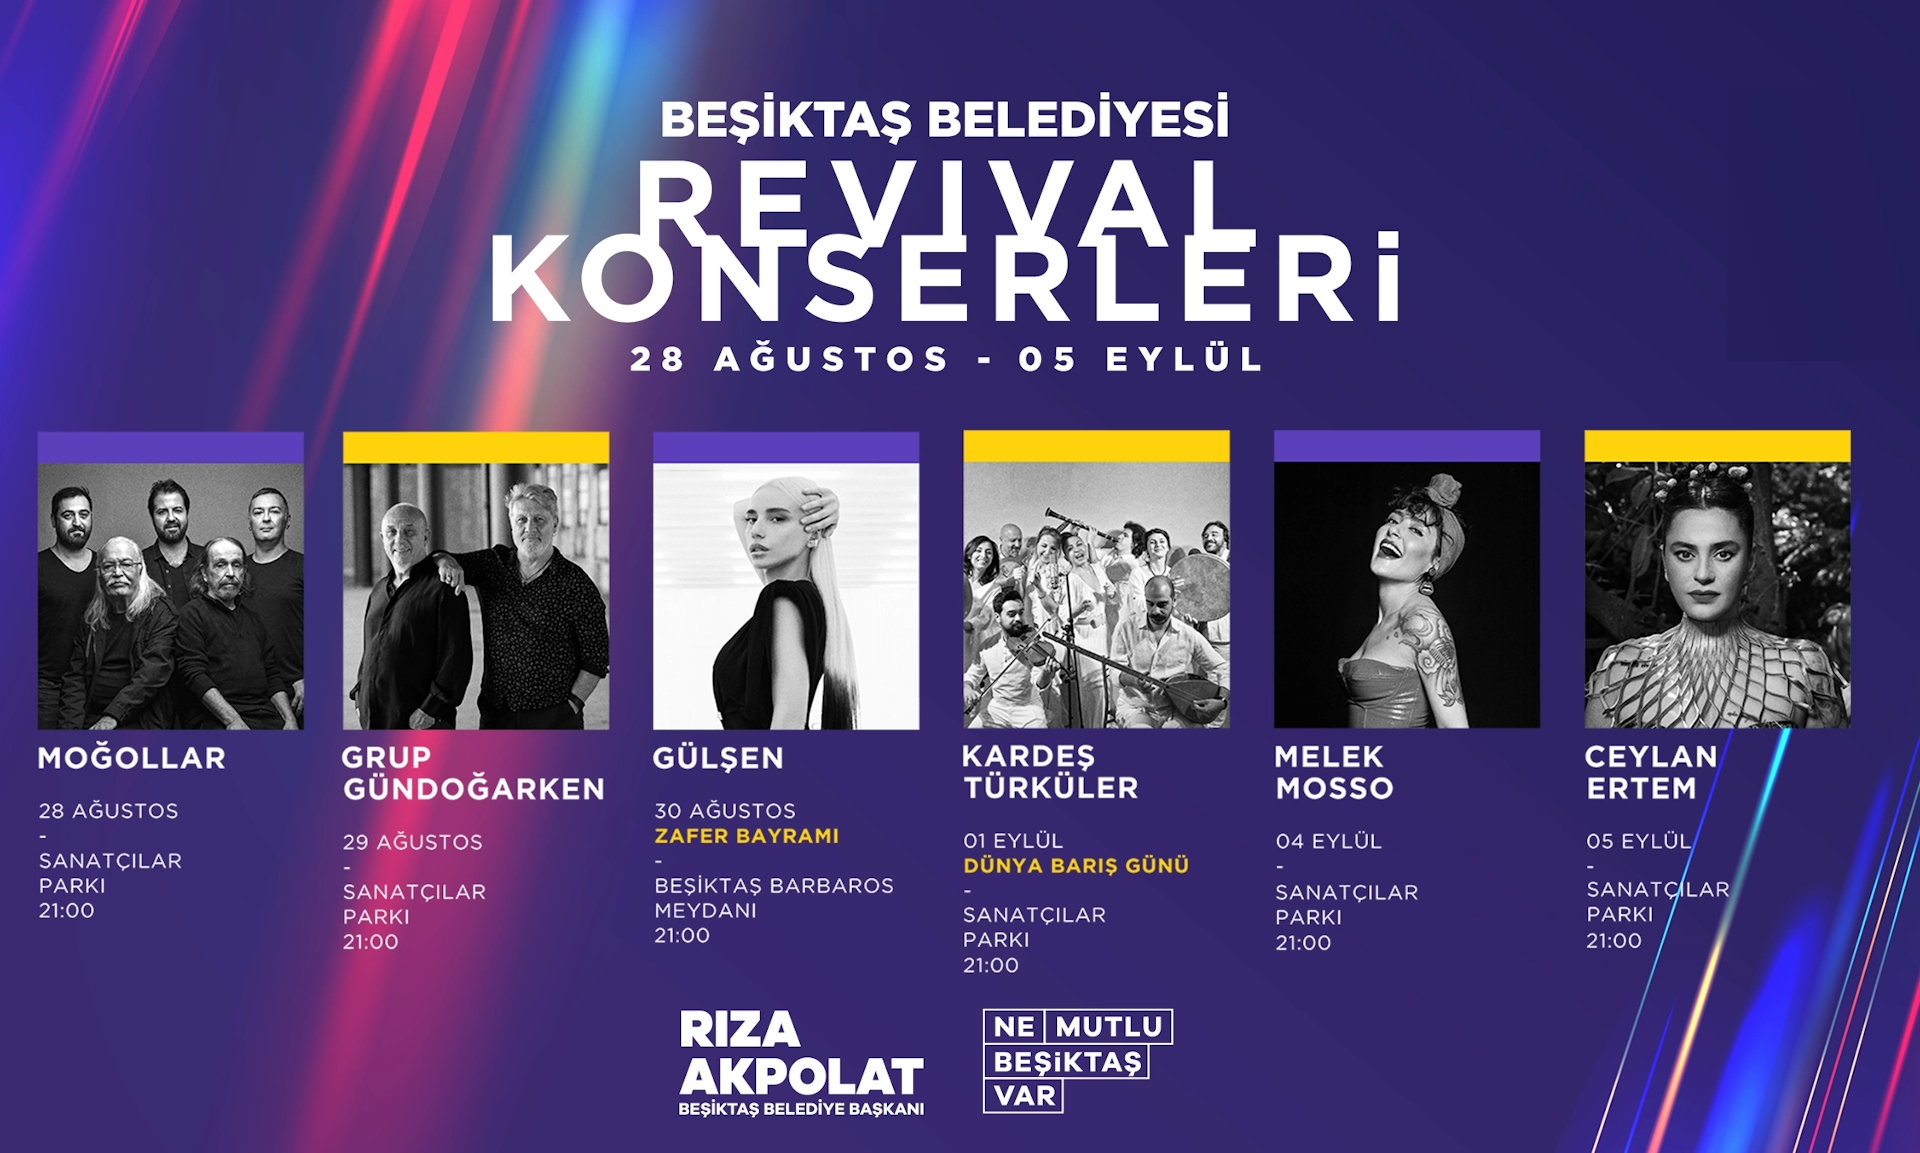 Kardeş Türküler - Beşiktaş Belediyesi Revival Konserleri